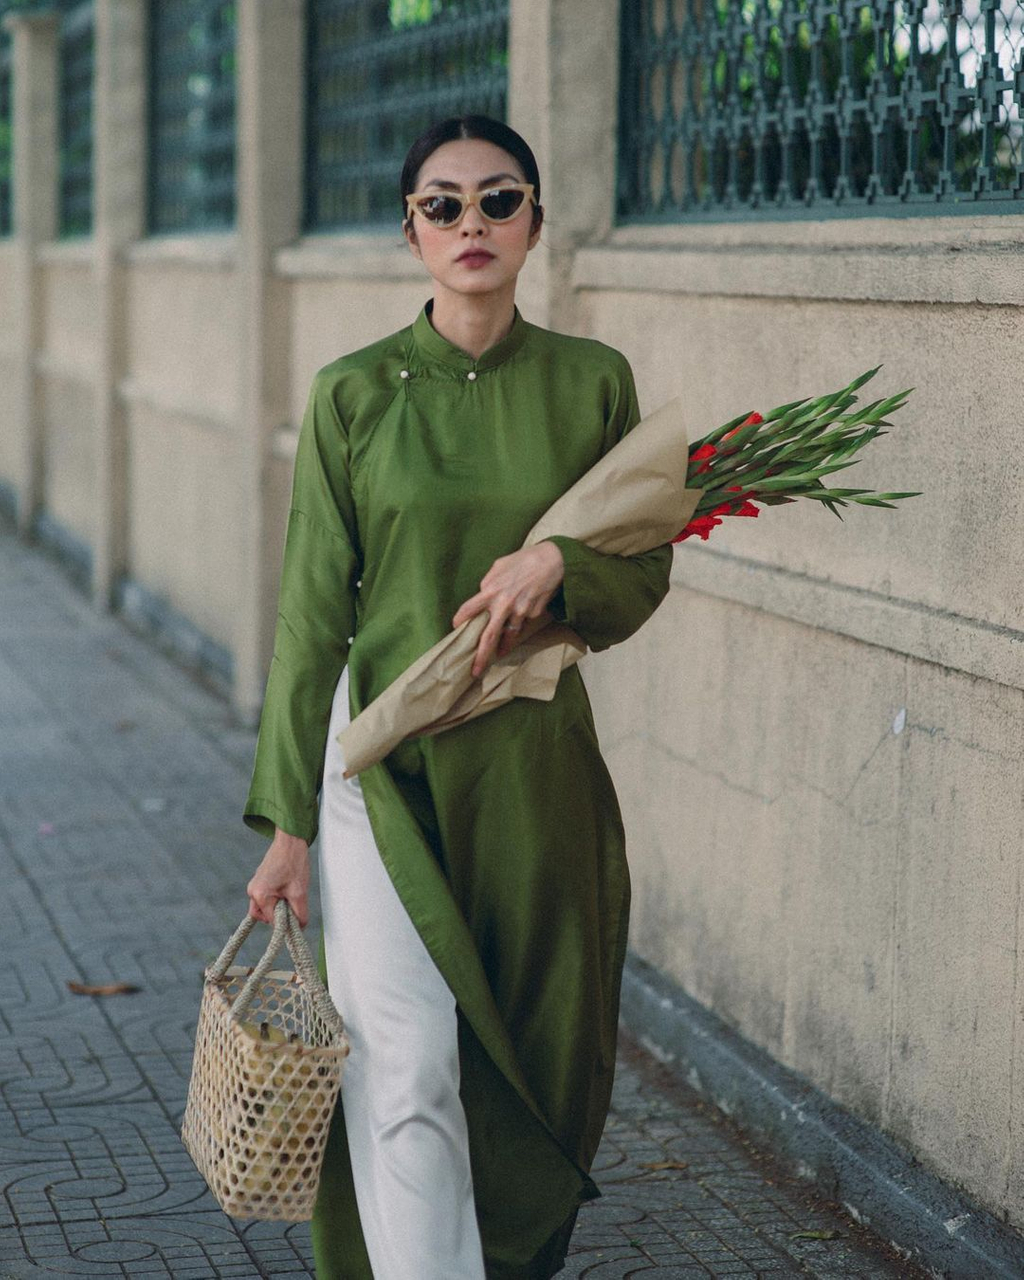 Ngay khi ngắm nhìn Hà Tăng với bộ áo dài truyền thống xưa cũ, chị em đều ai nấy đều mong muốn được khoác lên người những thiết kế cổ điển dung dị y như vậy.